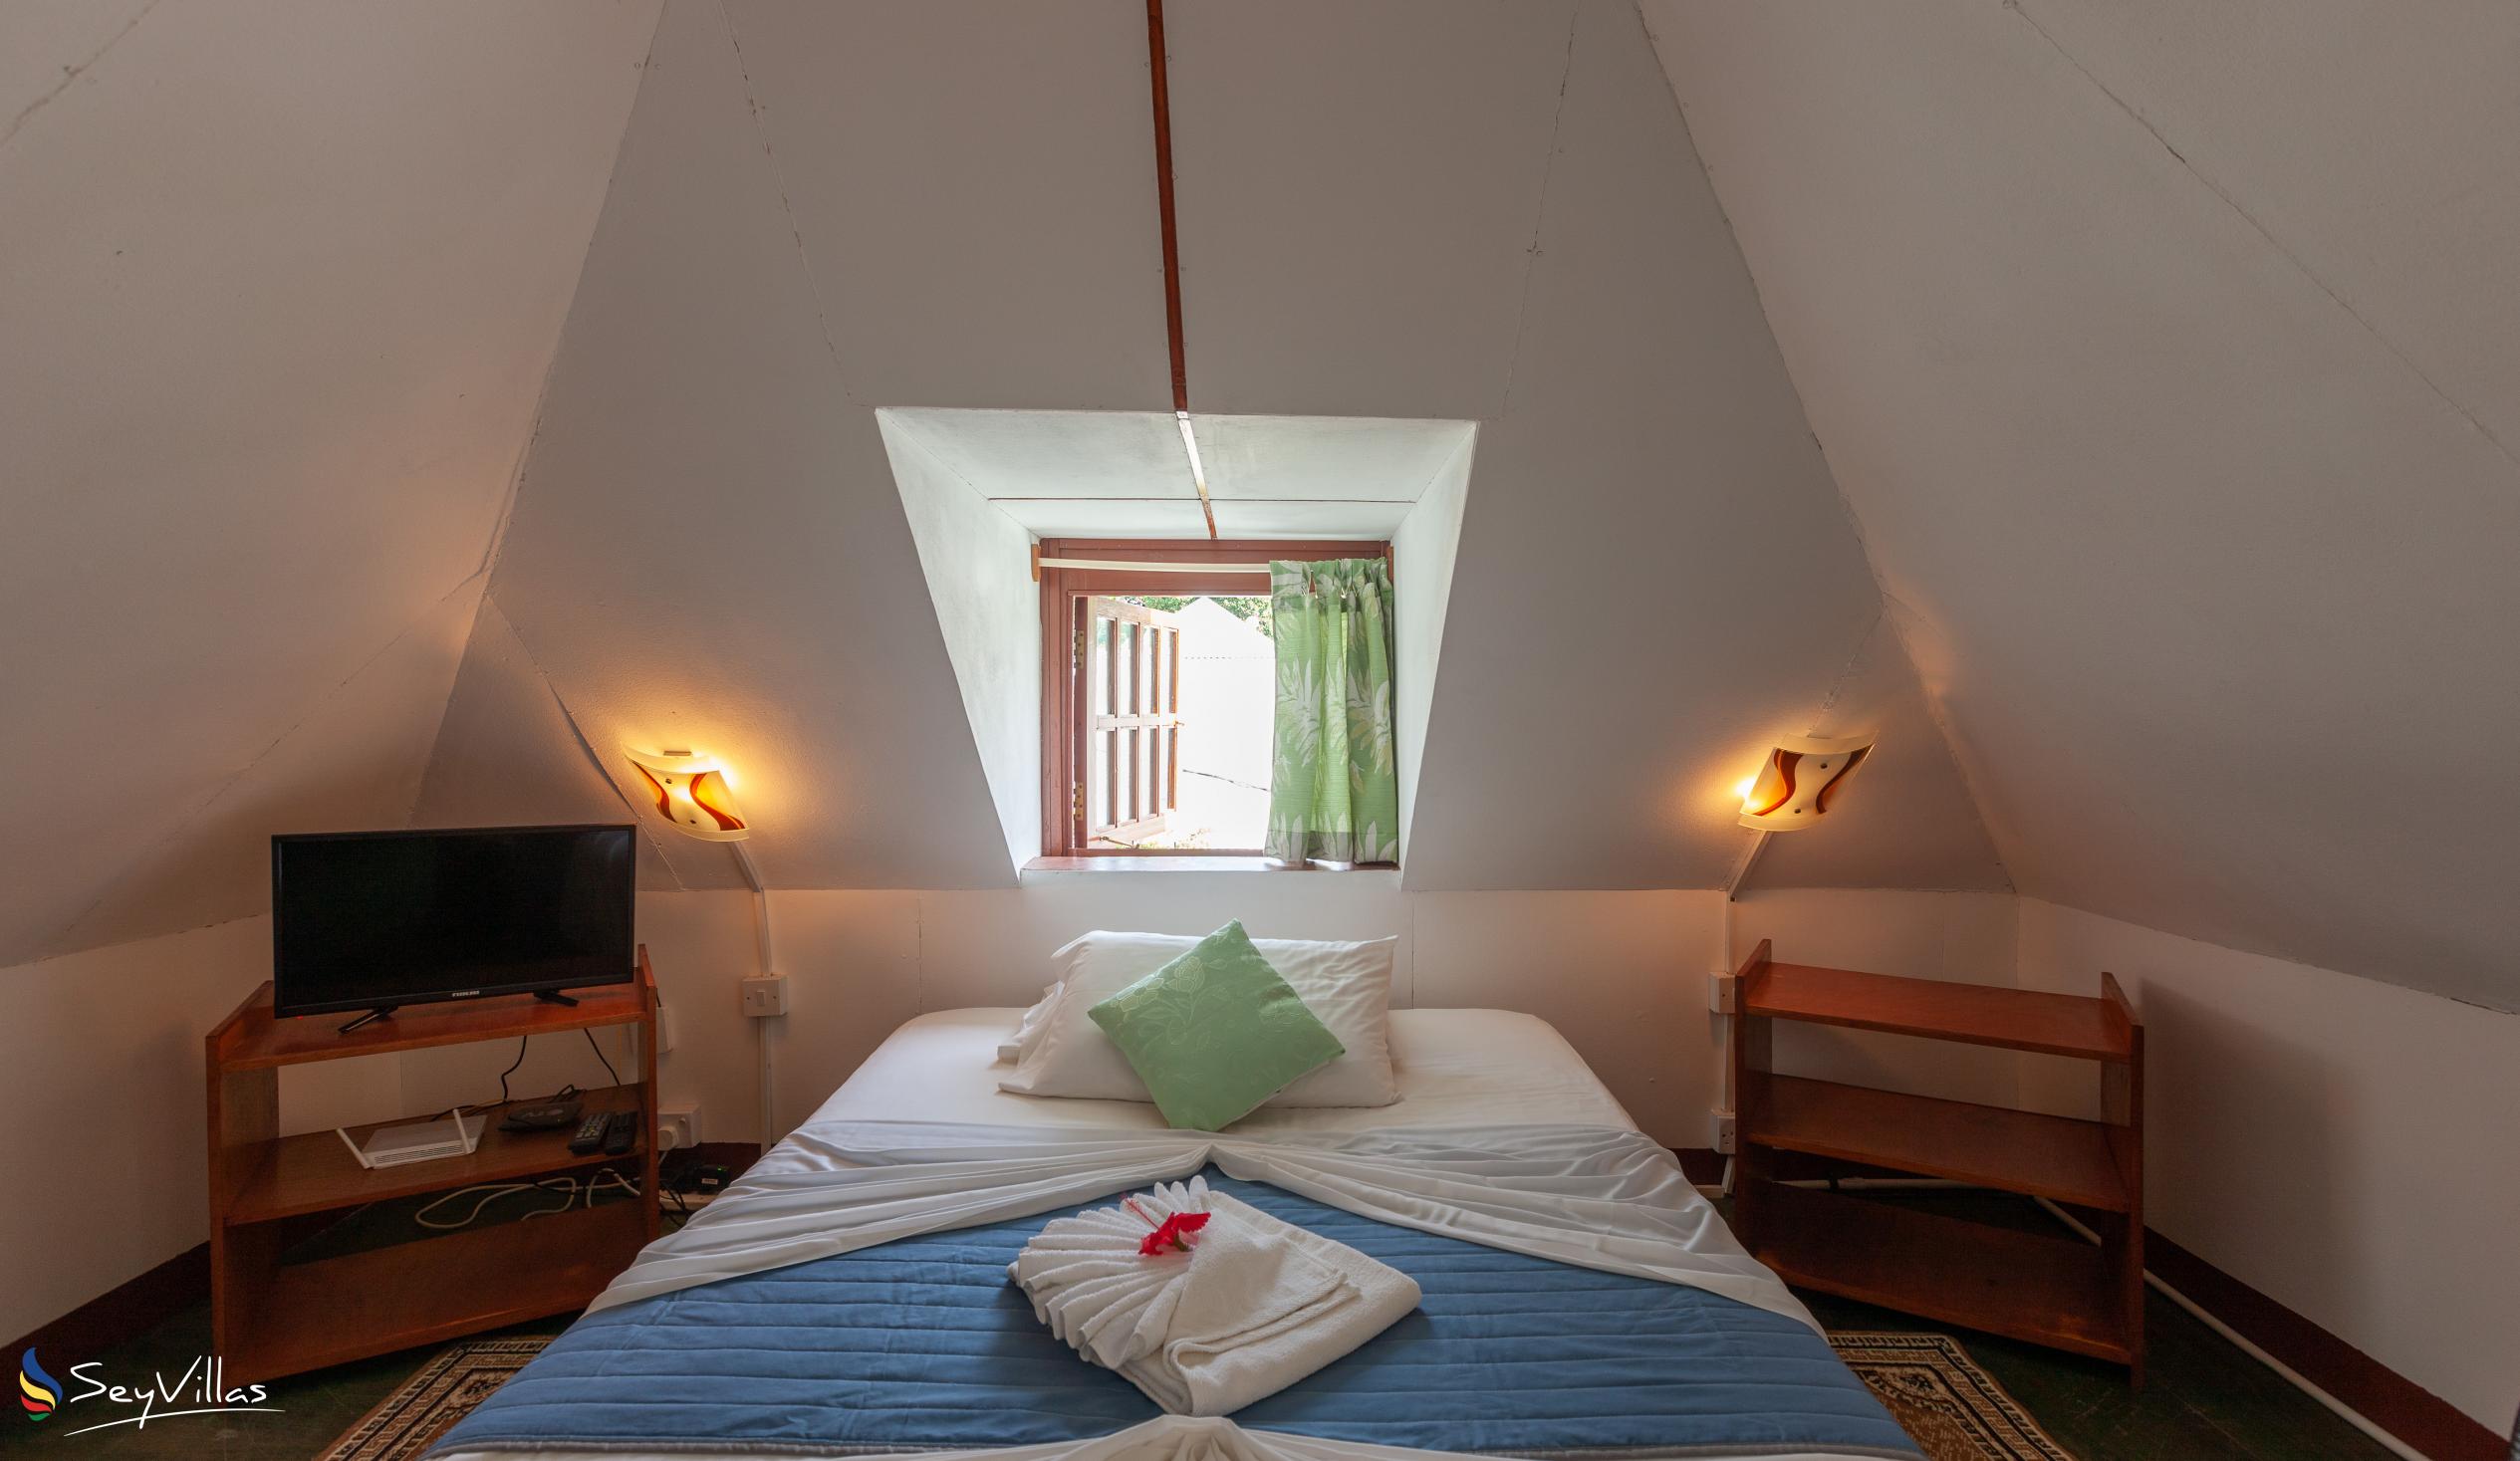 Photo 47: Pension Hibiscus - Maison Alice - Standard Apartment - La Digue (Seychelles)